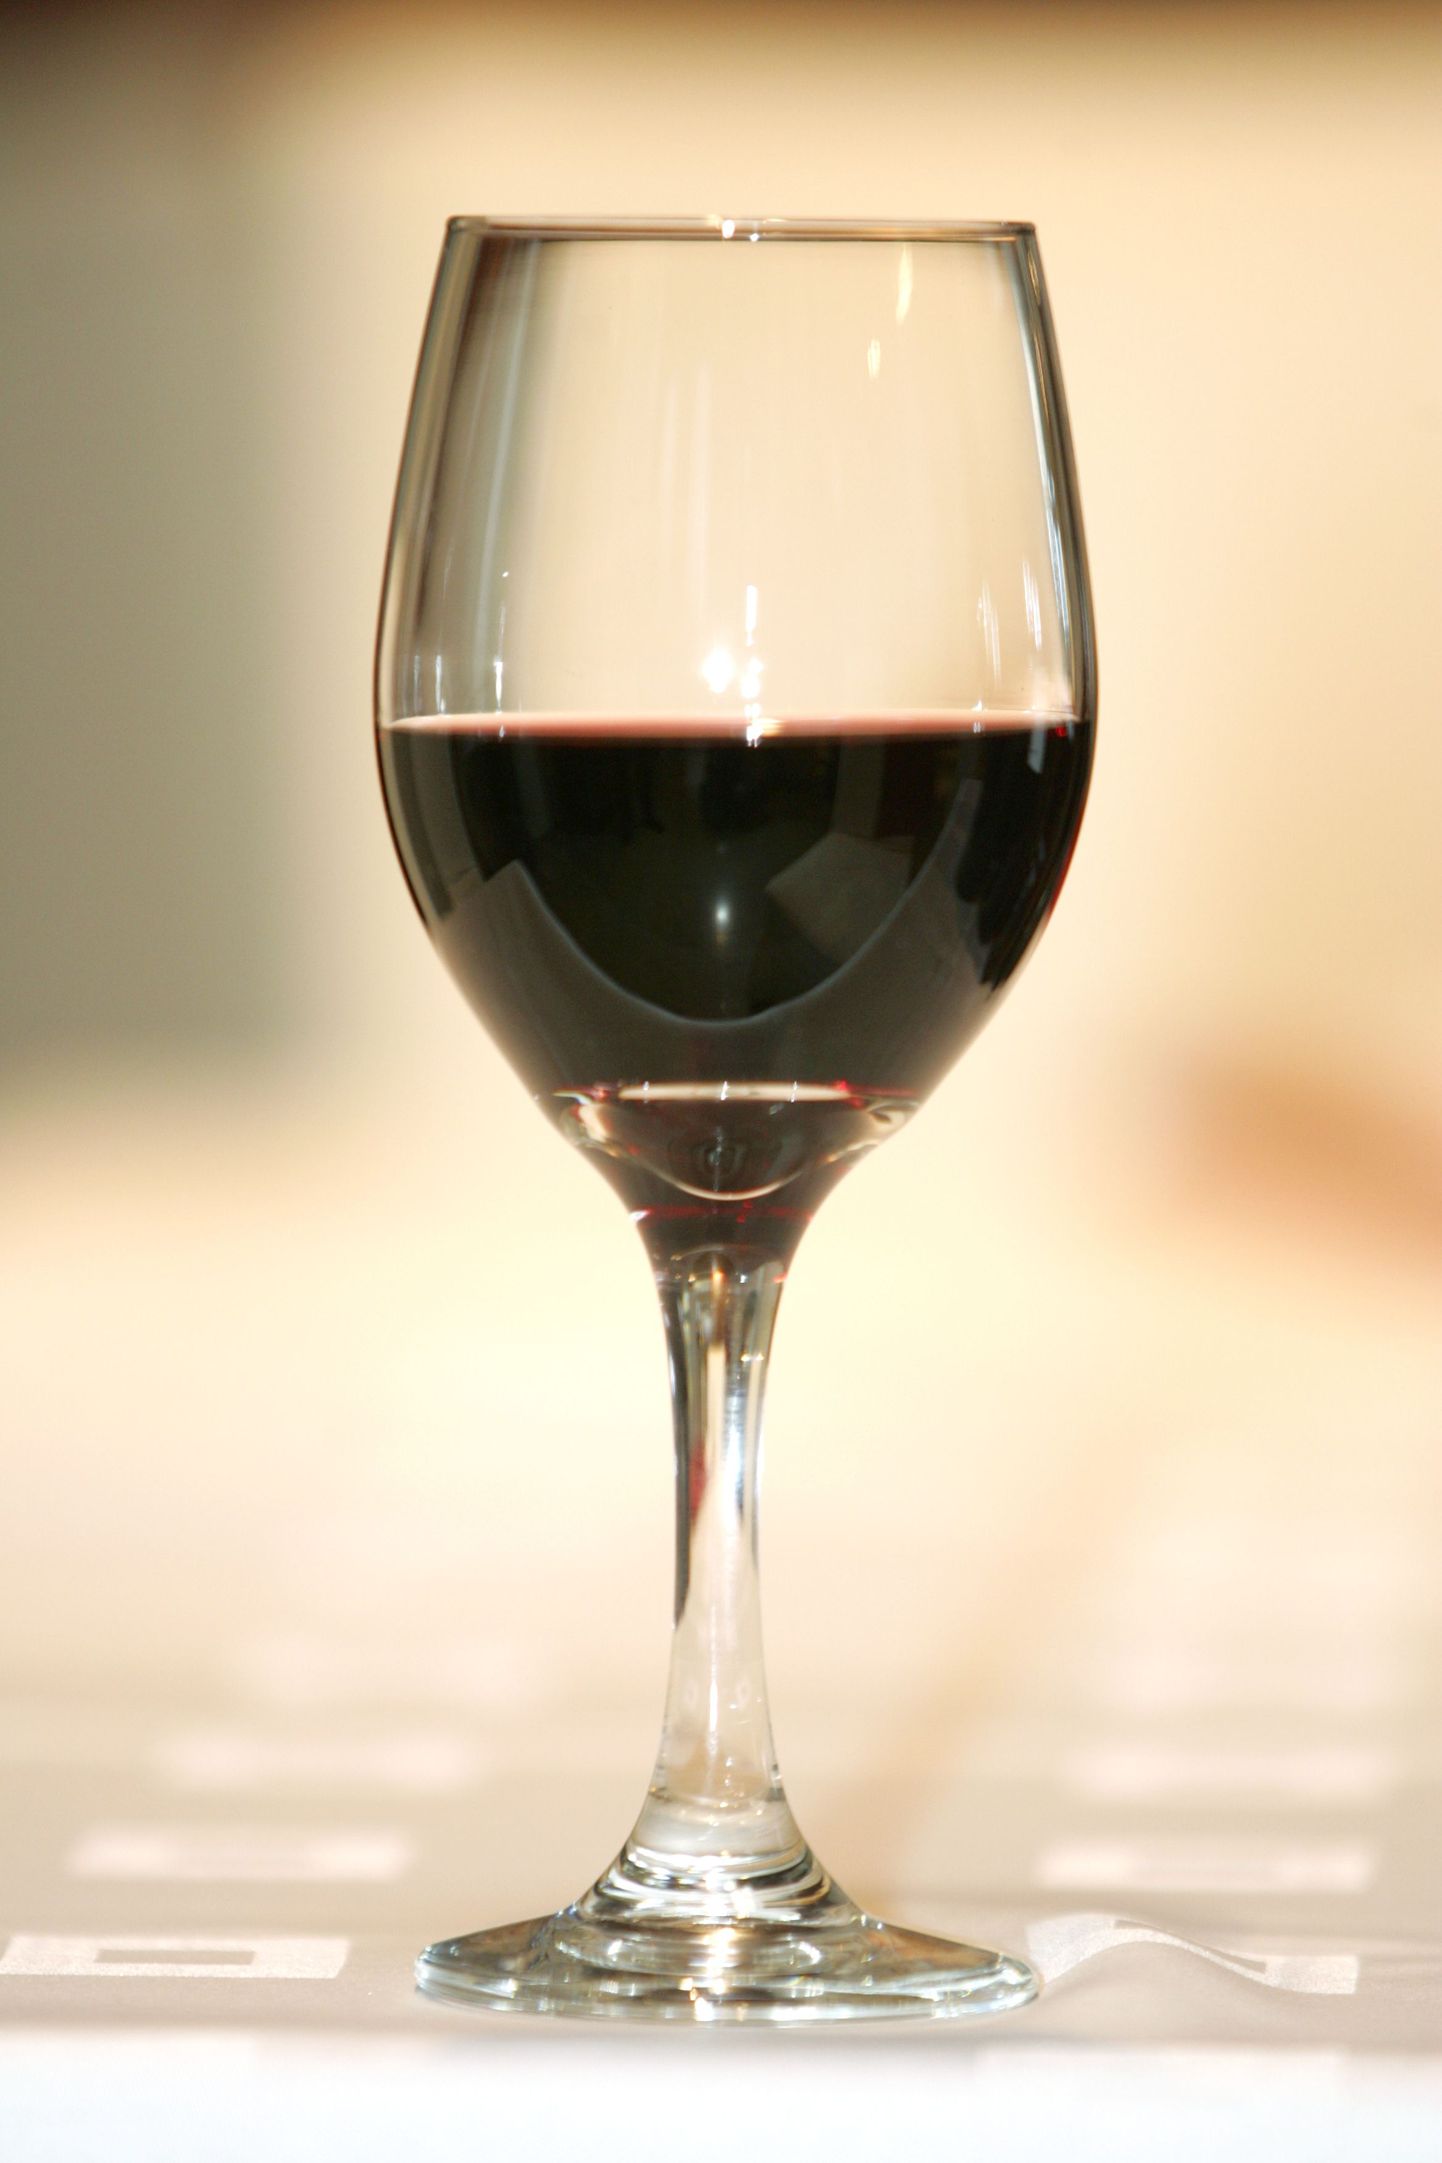 Ka klaasikeses veinis peitub üksjagu kilokaloreid.